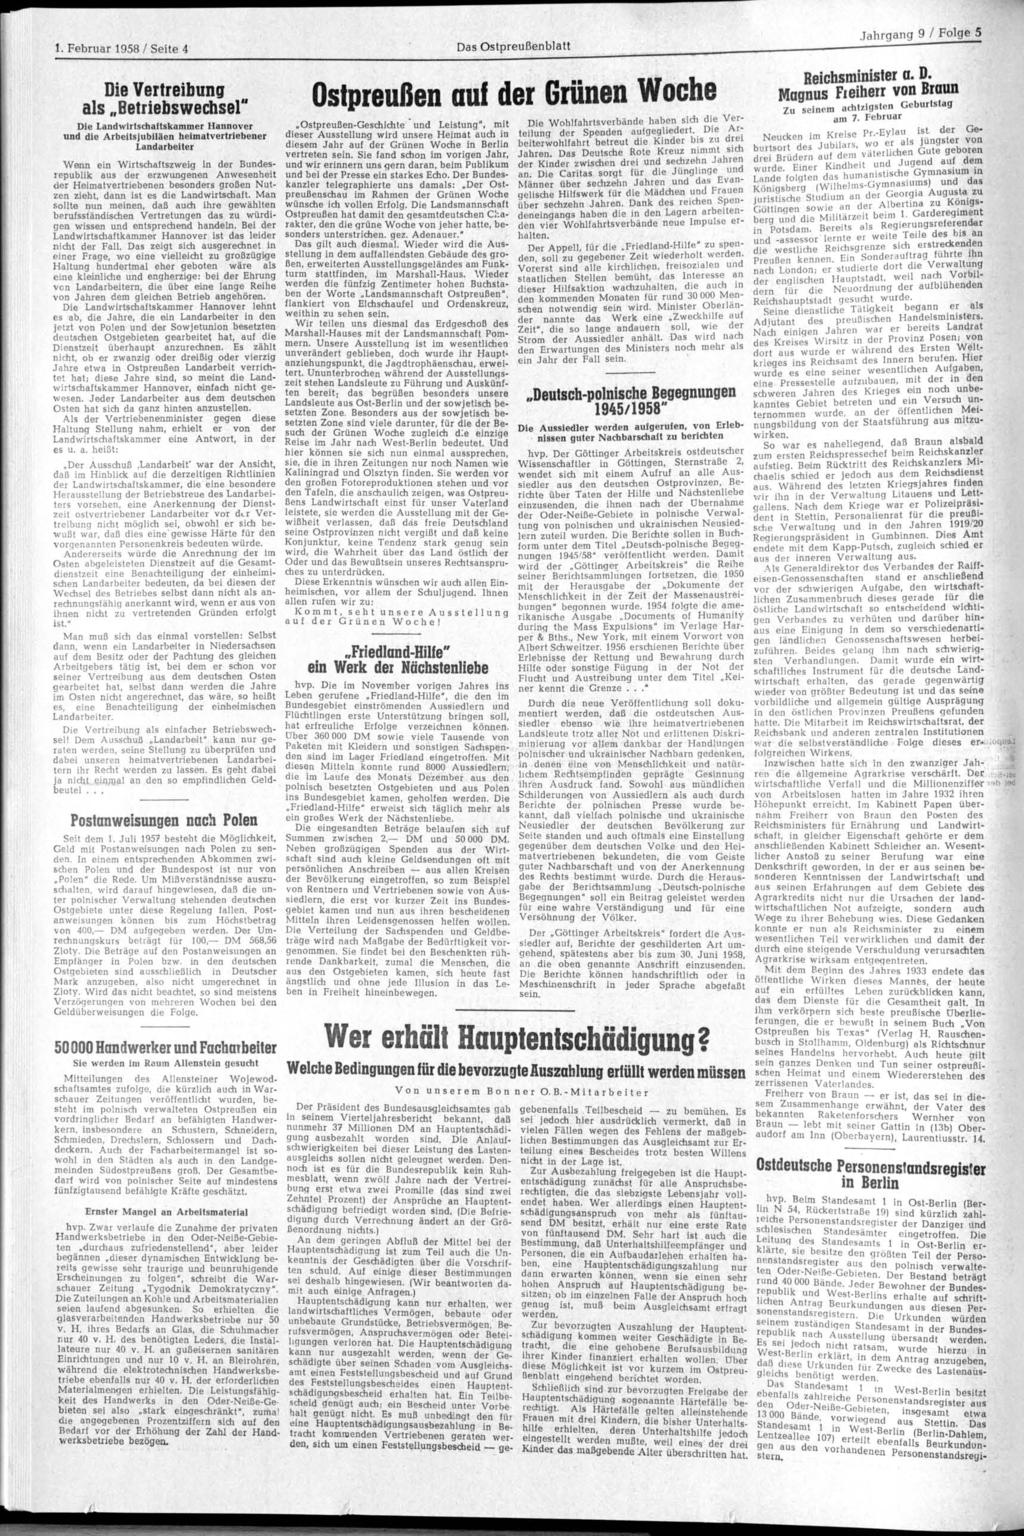 1. Februar 1958 / Seite 4 Das blatt Jahrgang 9 / Folge 5 Die Vertreibung als Betriebswechsel" Die Landwirtschaftskammer Hannover und die Arbeitsjubiläen heimatvertriebener Landarbeiter -Geschichte